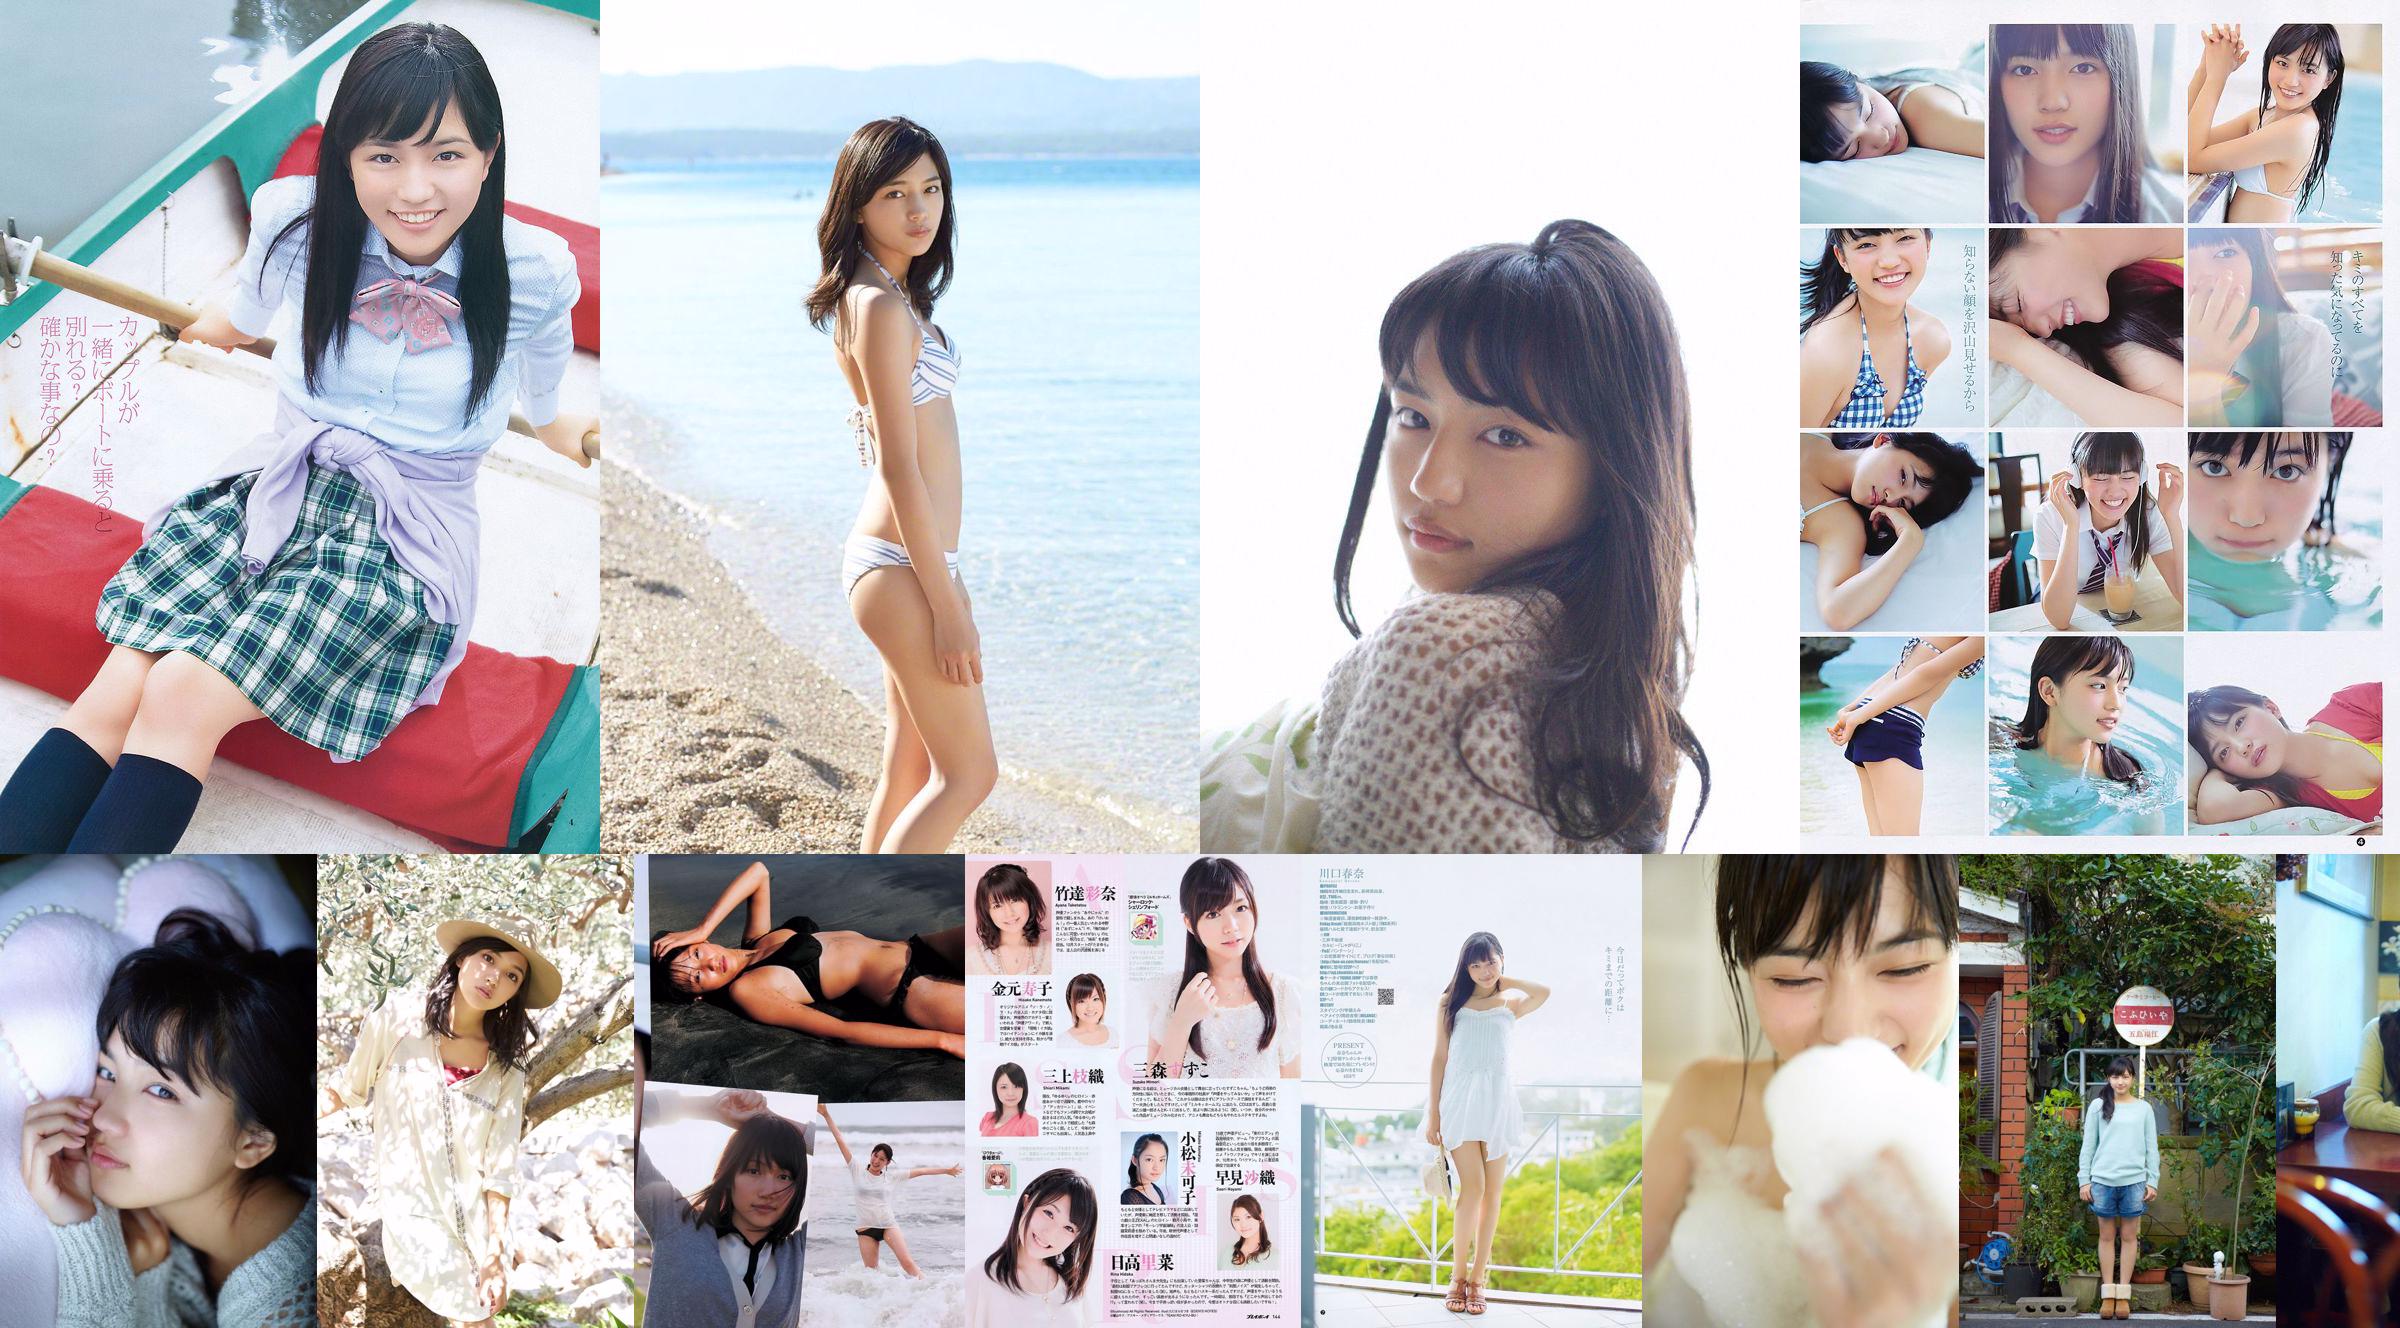 Haruna Kawaguchi Yumi Sugimoto [Weekly Young Jump] 2012 No.18 Photograph No.02e10f Page 3